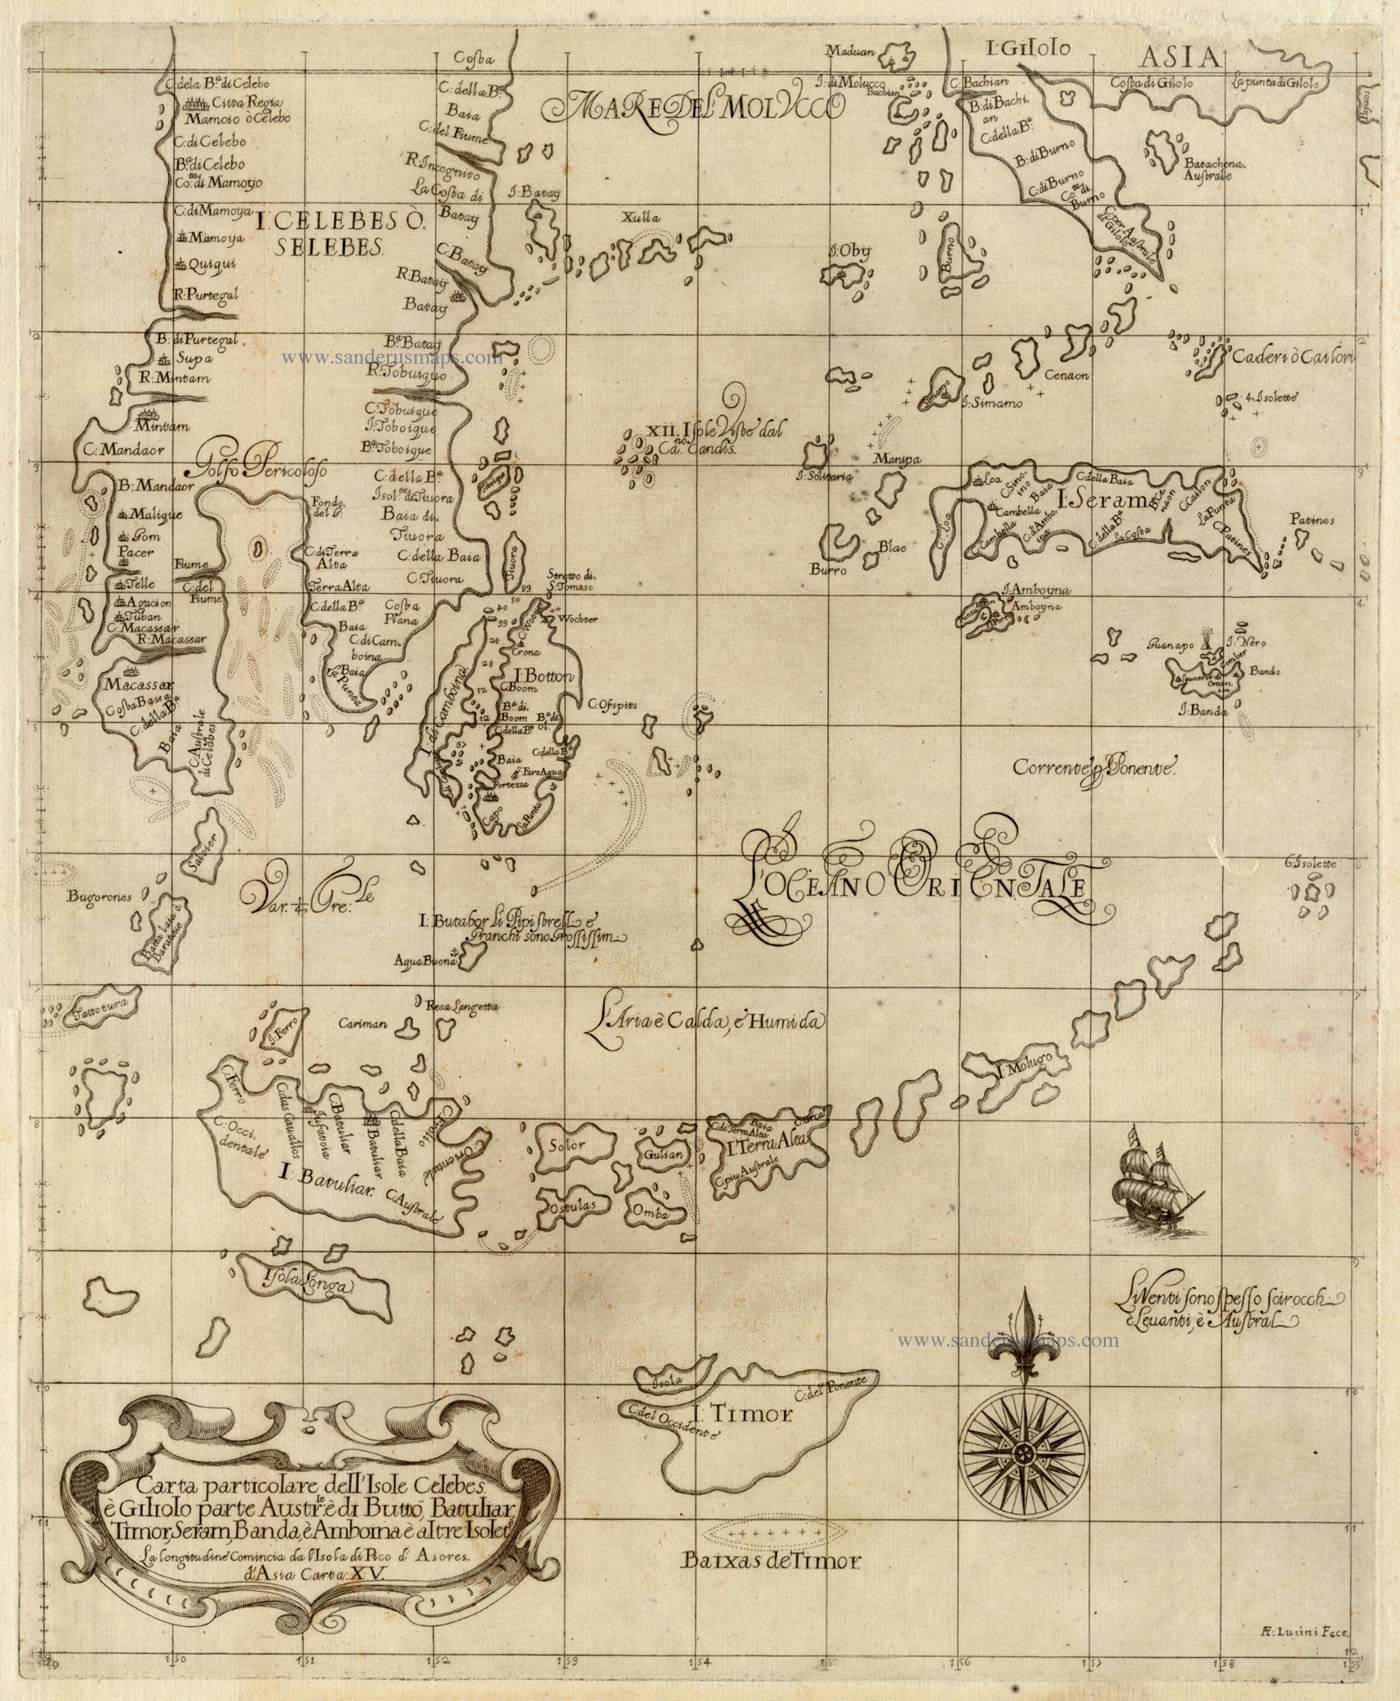 Dudley carta perticolare dell'isole celebes